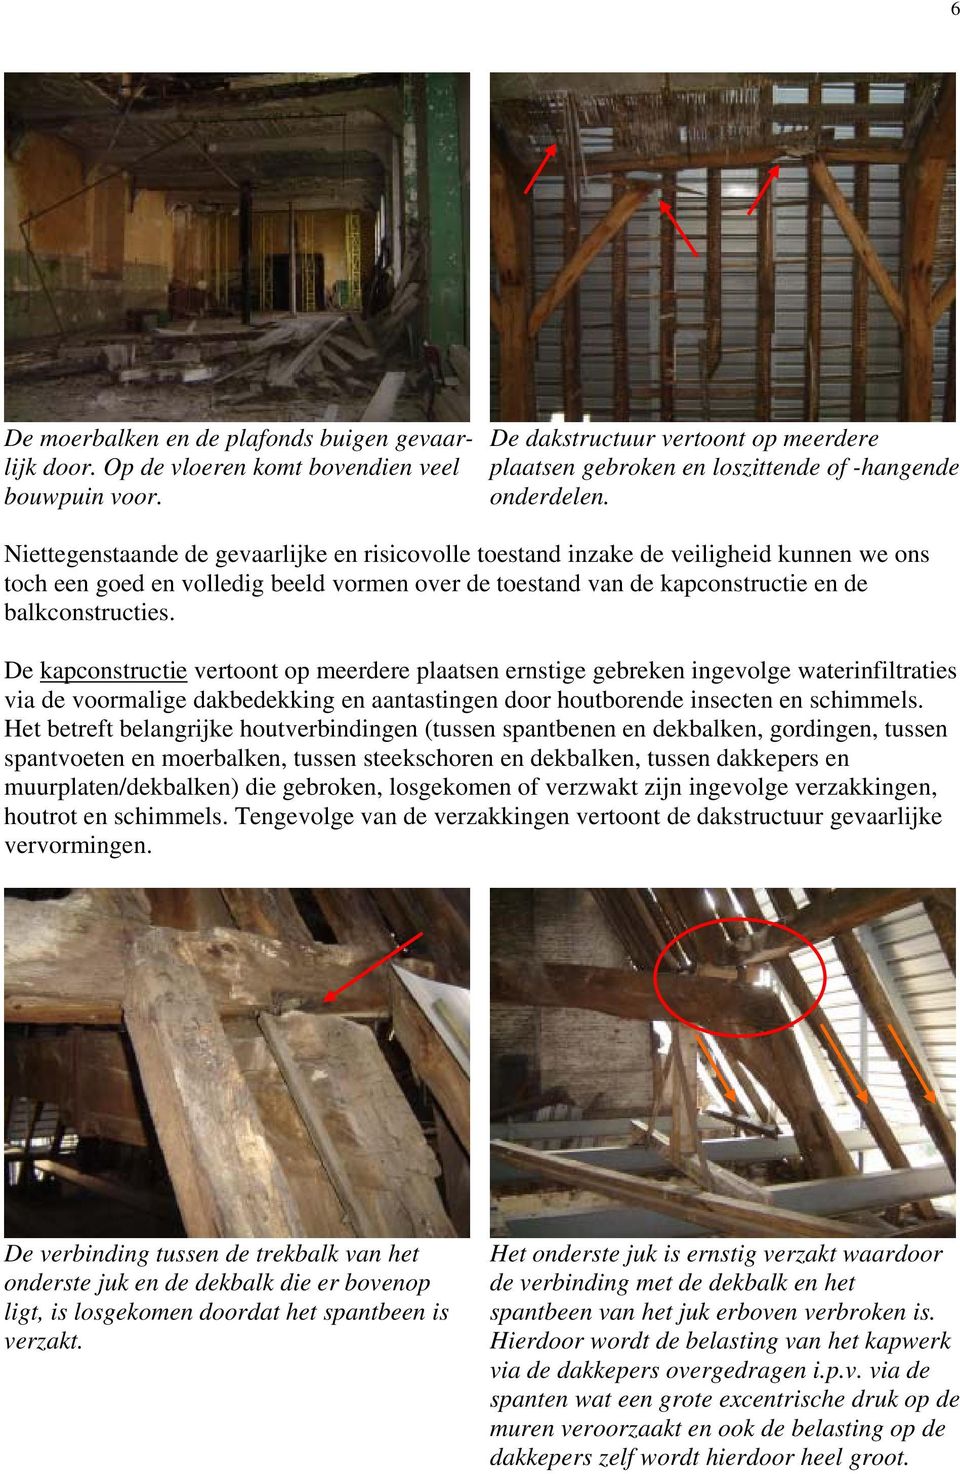 De kapconstructie vertoont op meerdere plaatsen ernstige gebreken ingevolge waterinfiltraties via de voormalige dakbedekking en aantastingen door houtborende insecten en schimmels.